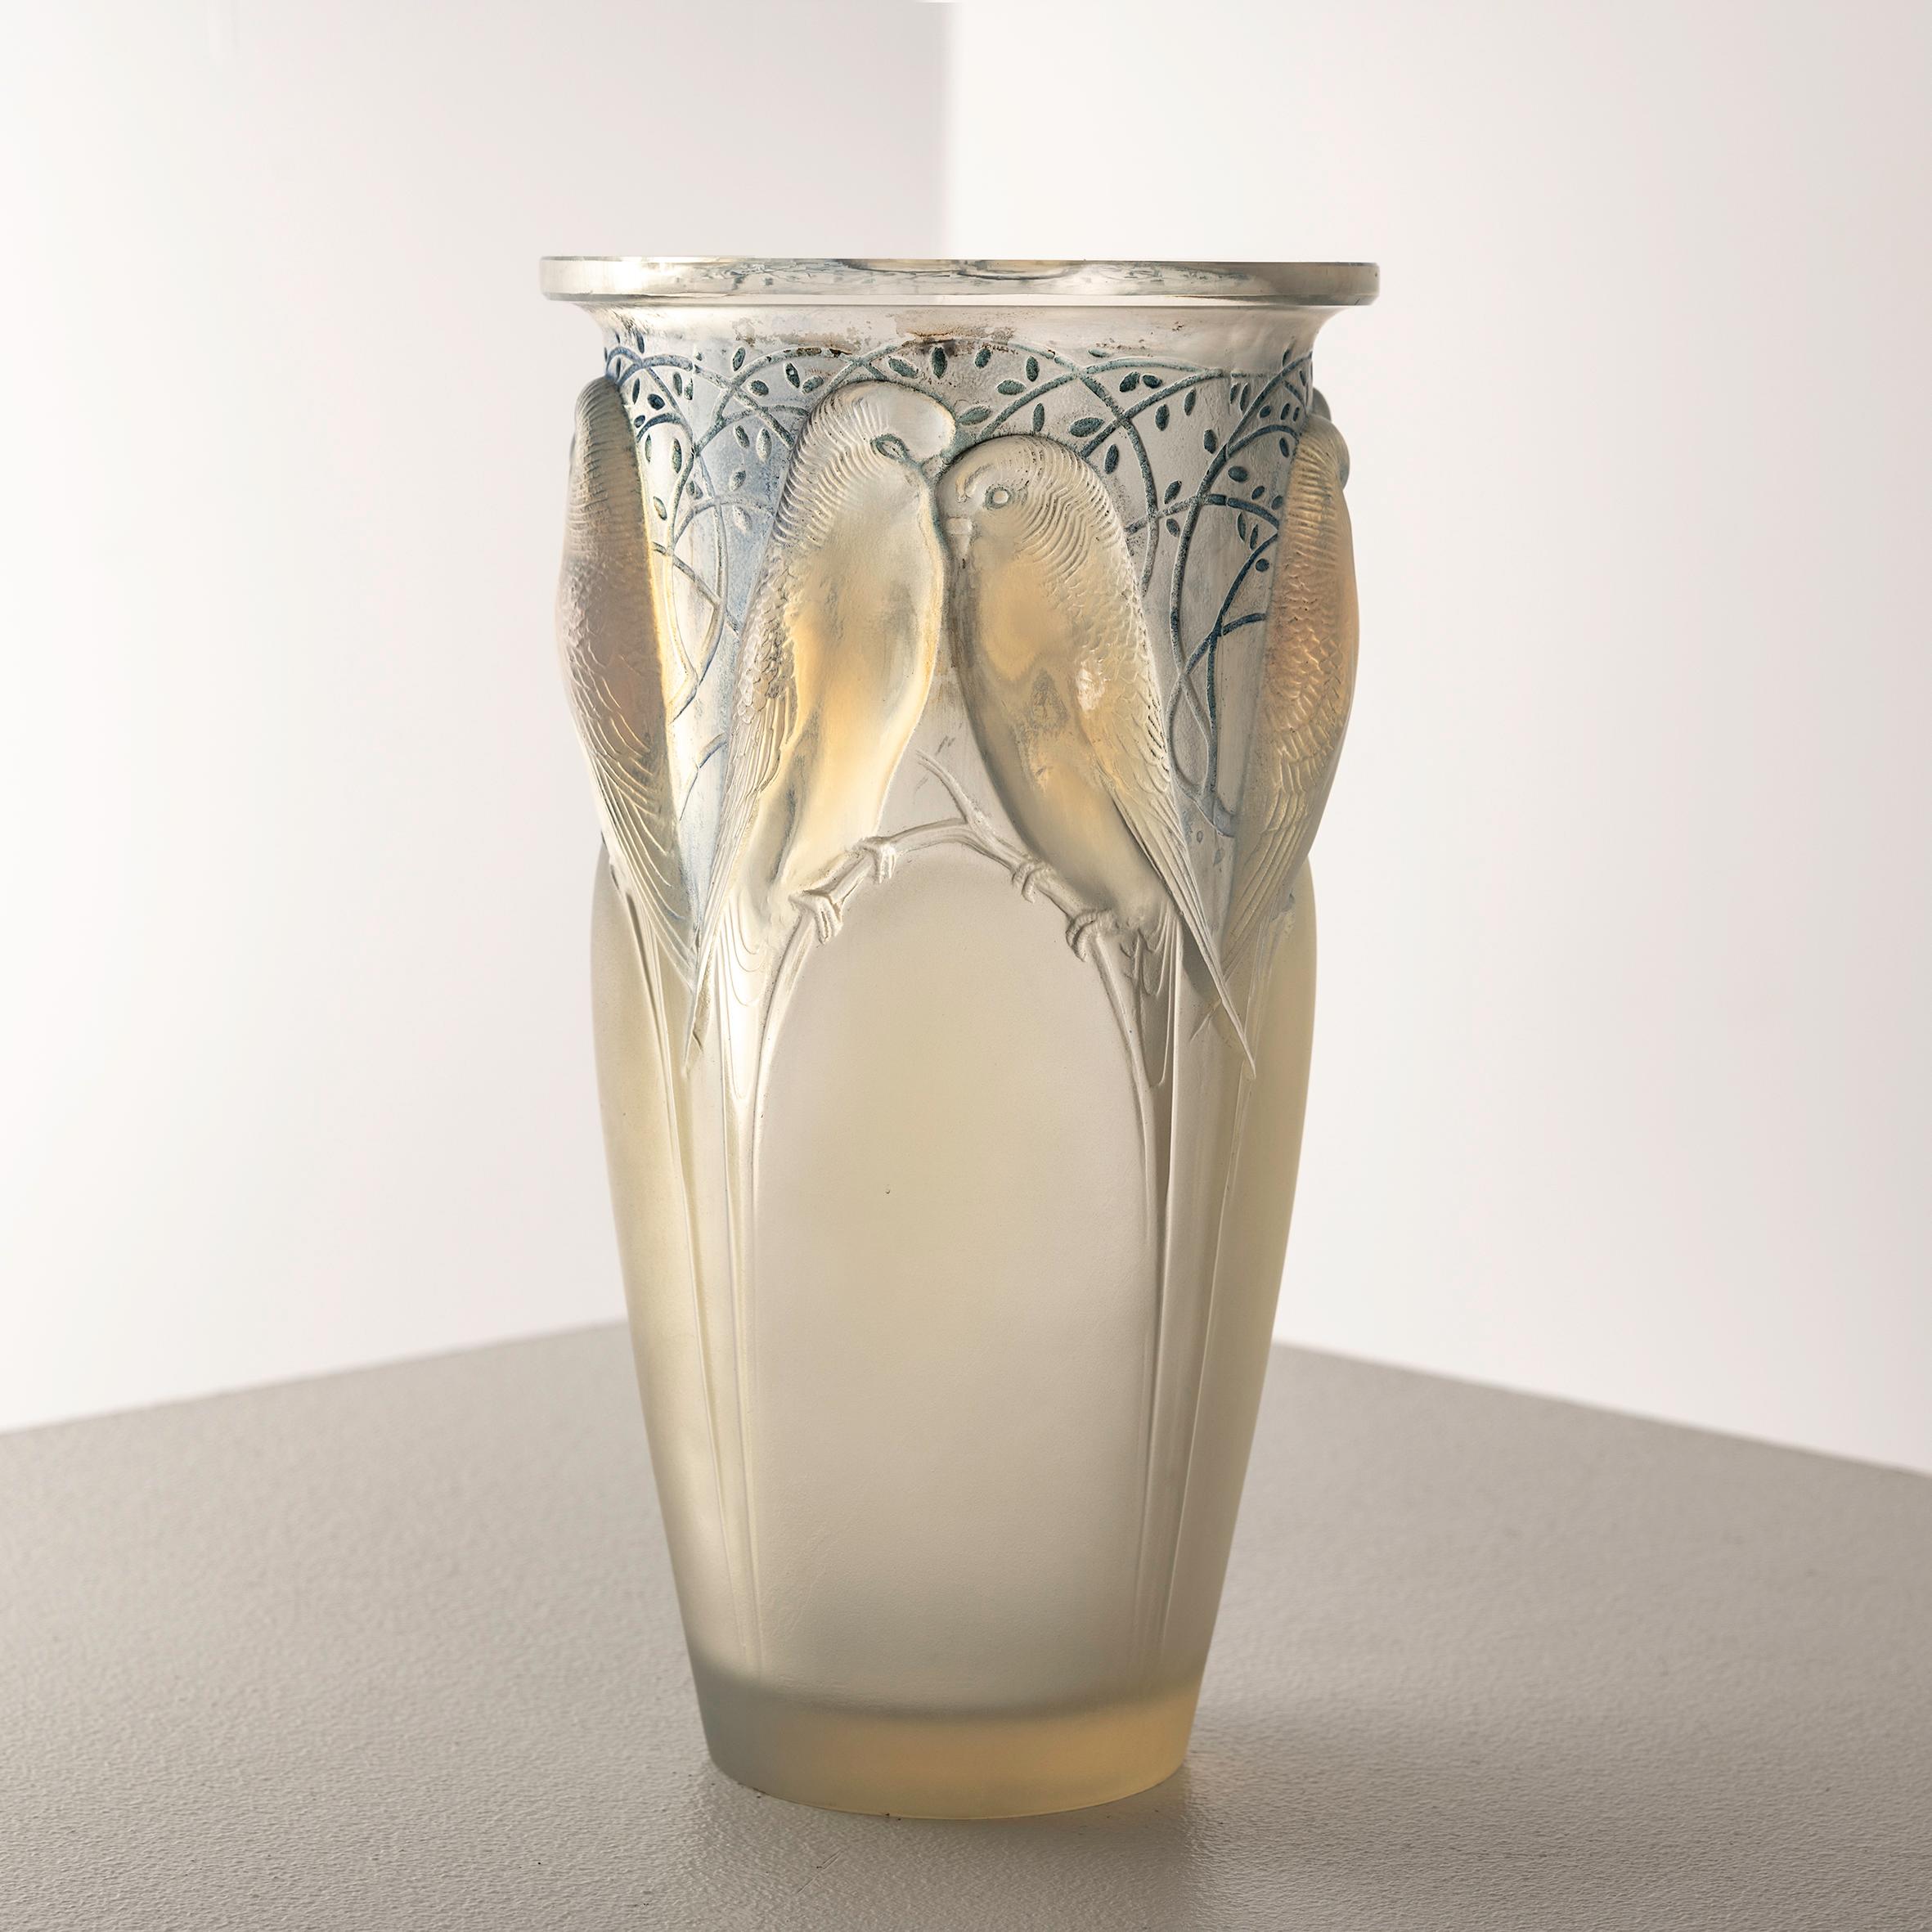 Eine opalisierende Ceylan-Vase von René Lalique ist ein leuchtendes Beispiel für die Meisterschaft des Künstlers. Dieses außergewöhnliche, opalisierend schillernde Stück zeigt die feine Balance zwischen natürlichen Motiven und künstlerischer